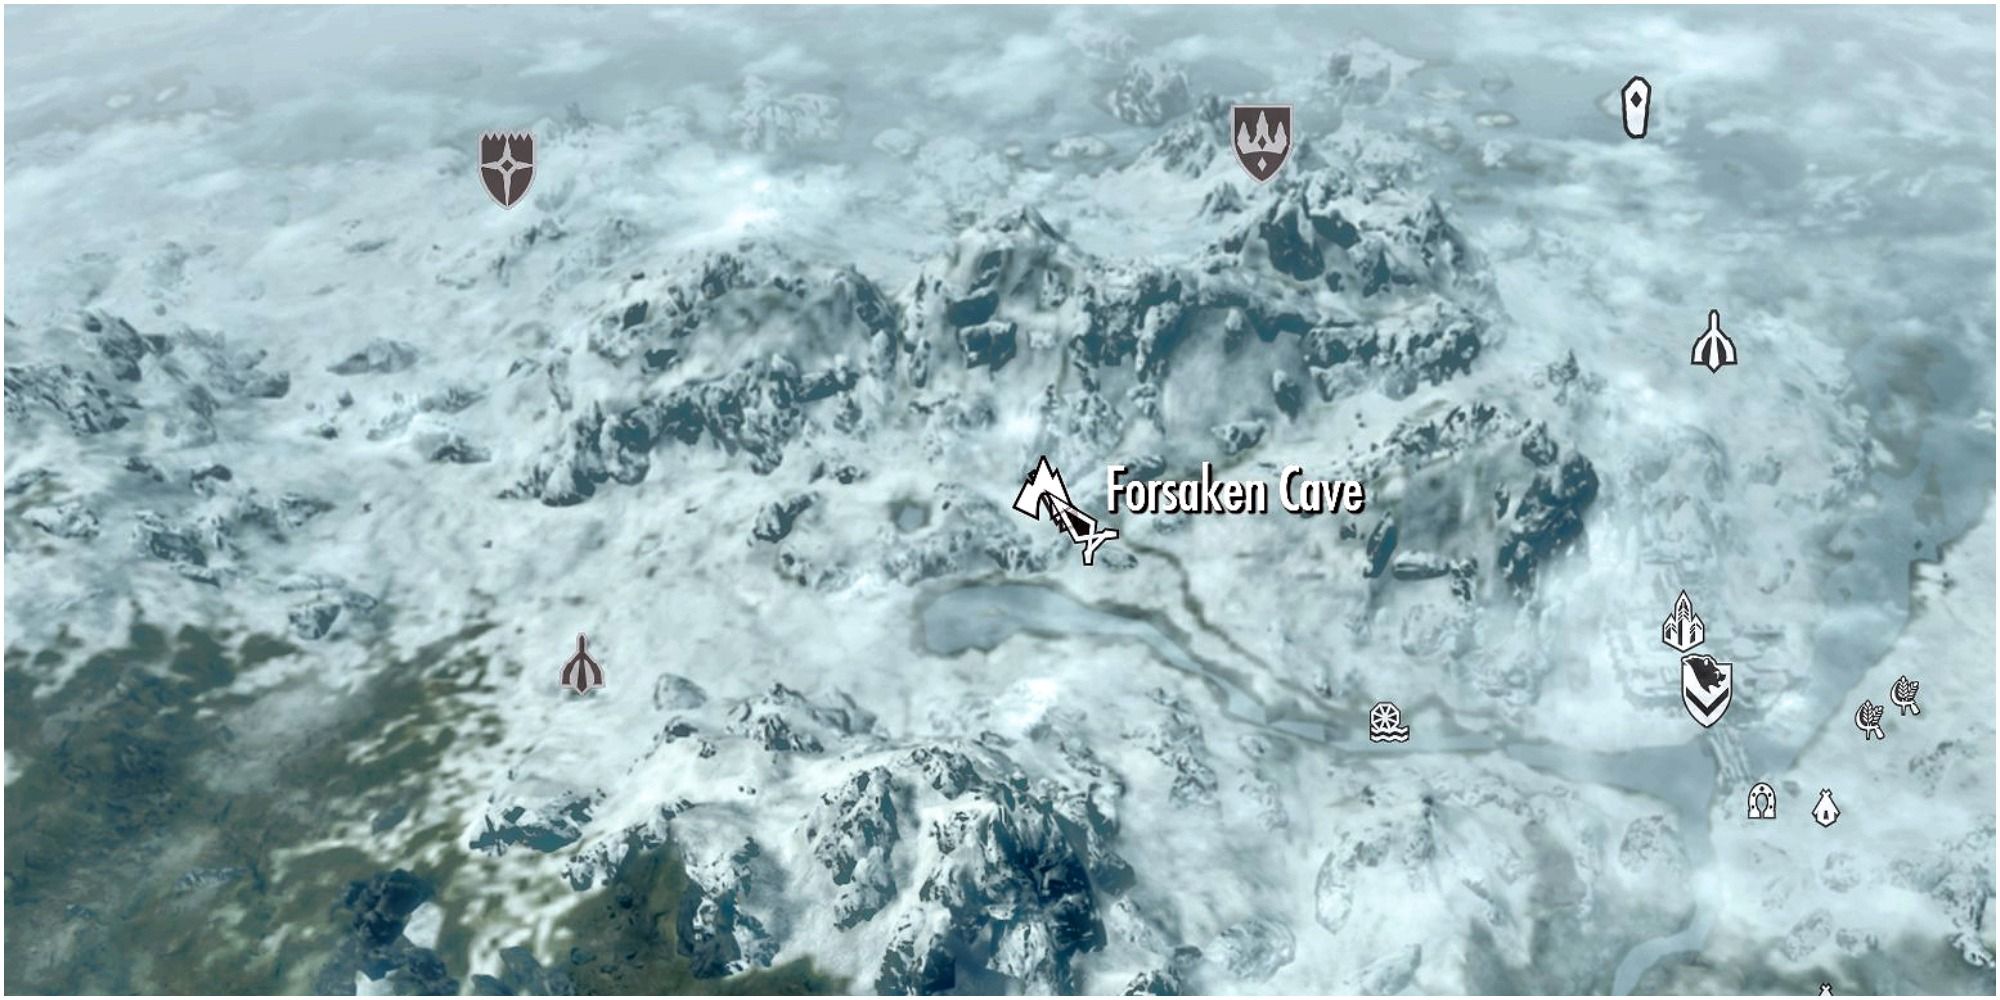 Skyrim Forsaken Cave Location On The World Map